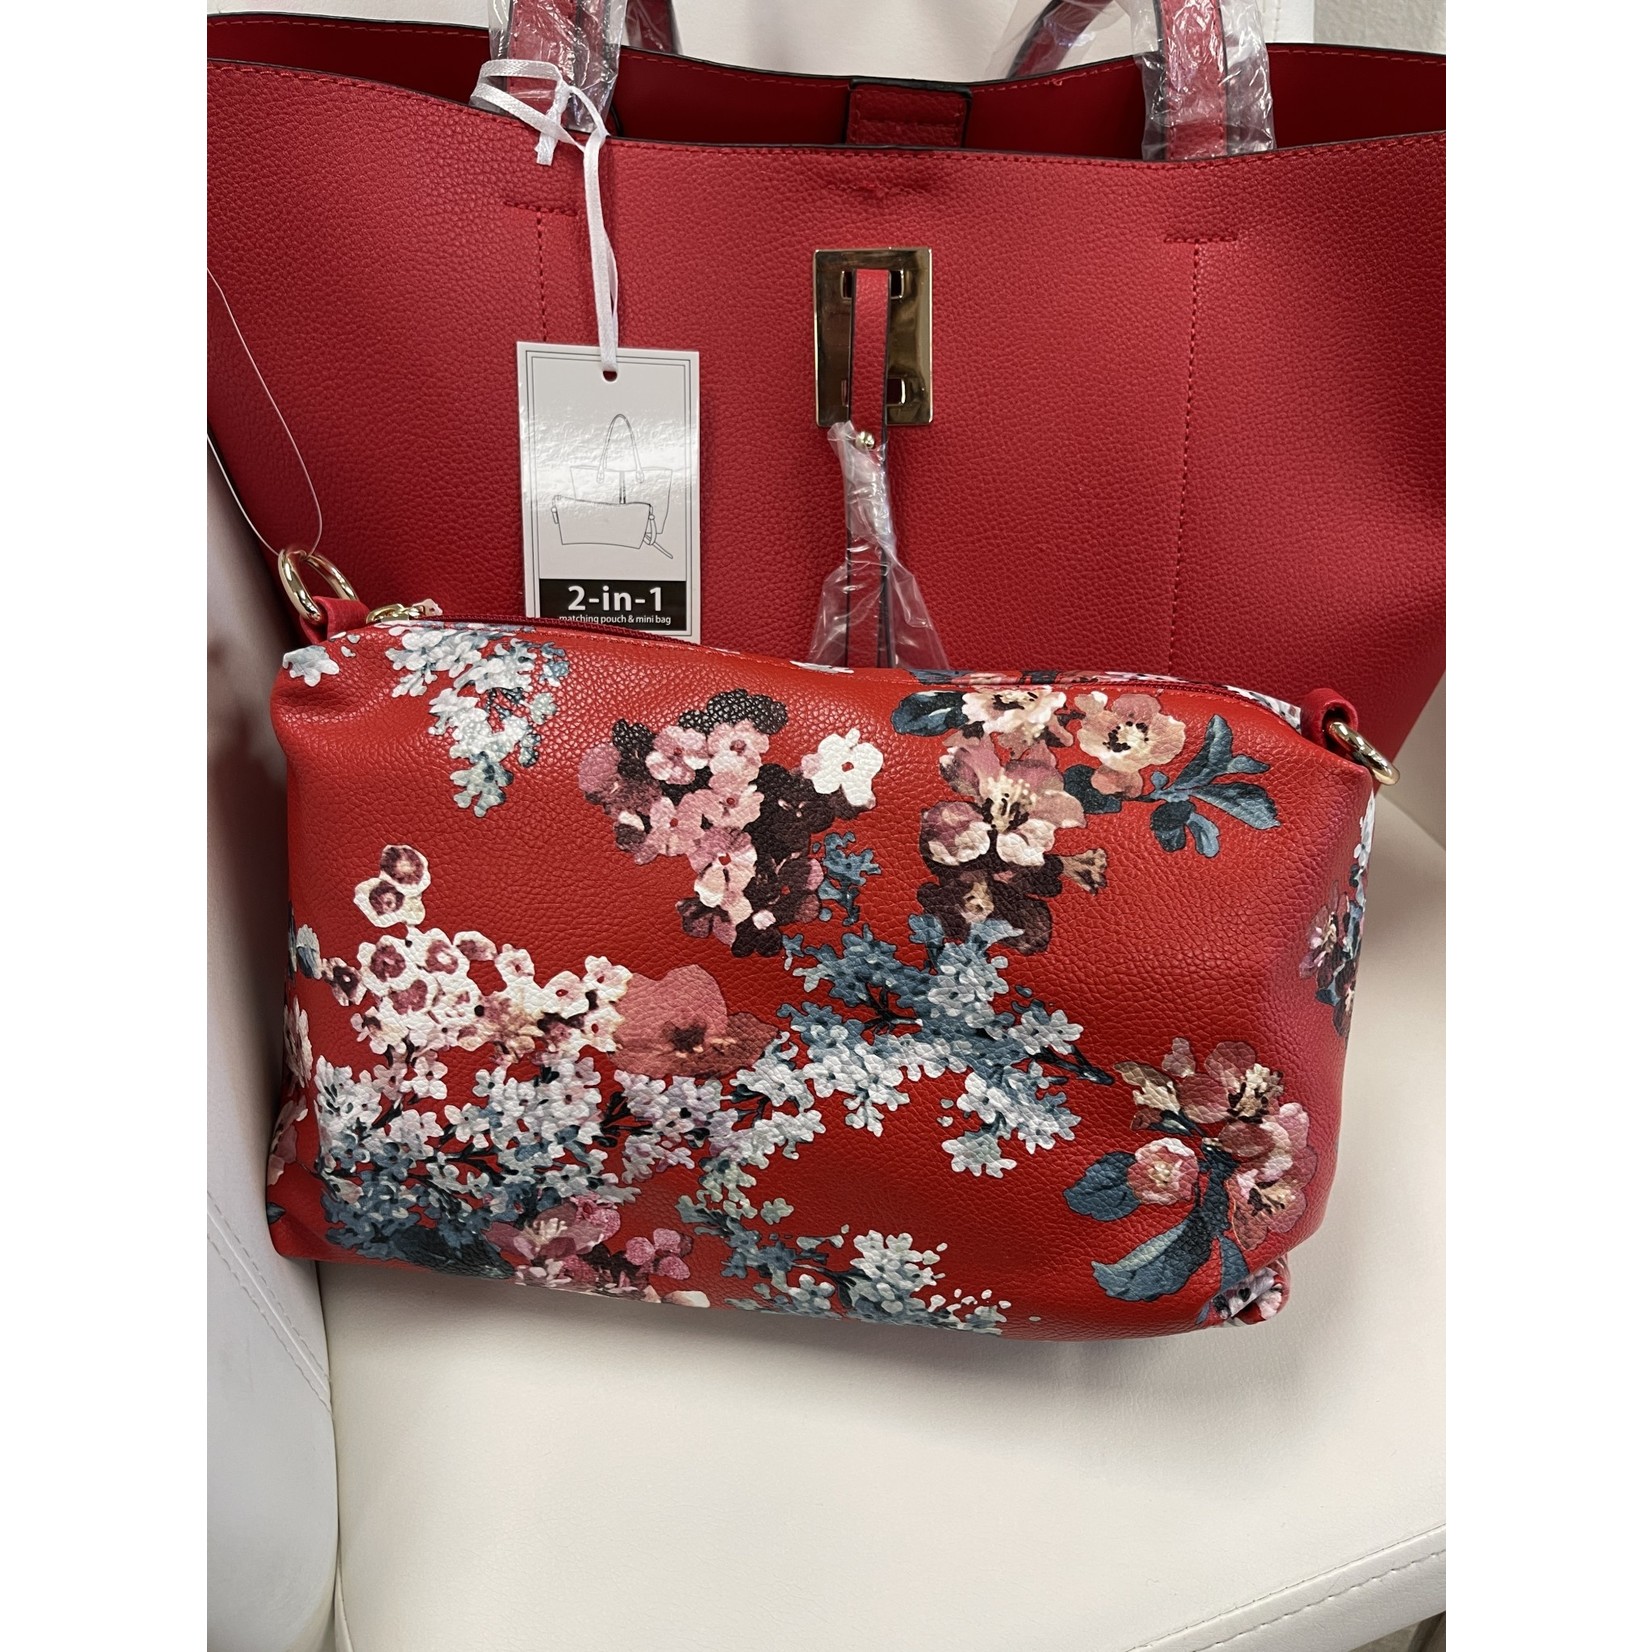 La Terre Fashion Solid Red Handbag w/ additional Floral Clutch